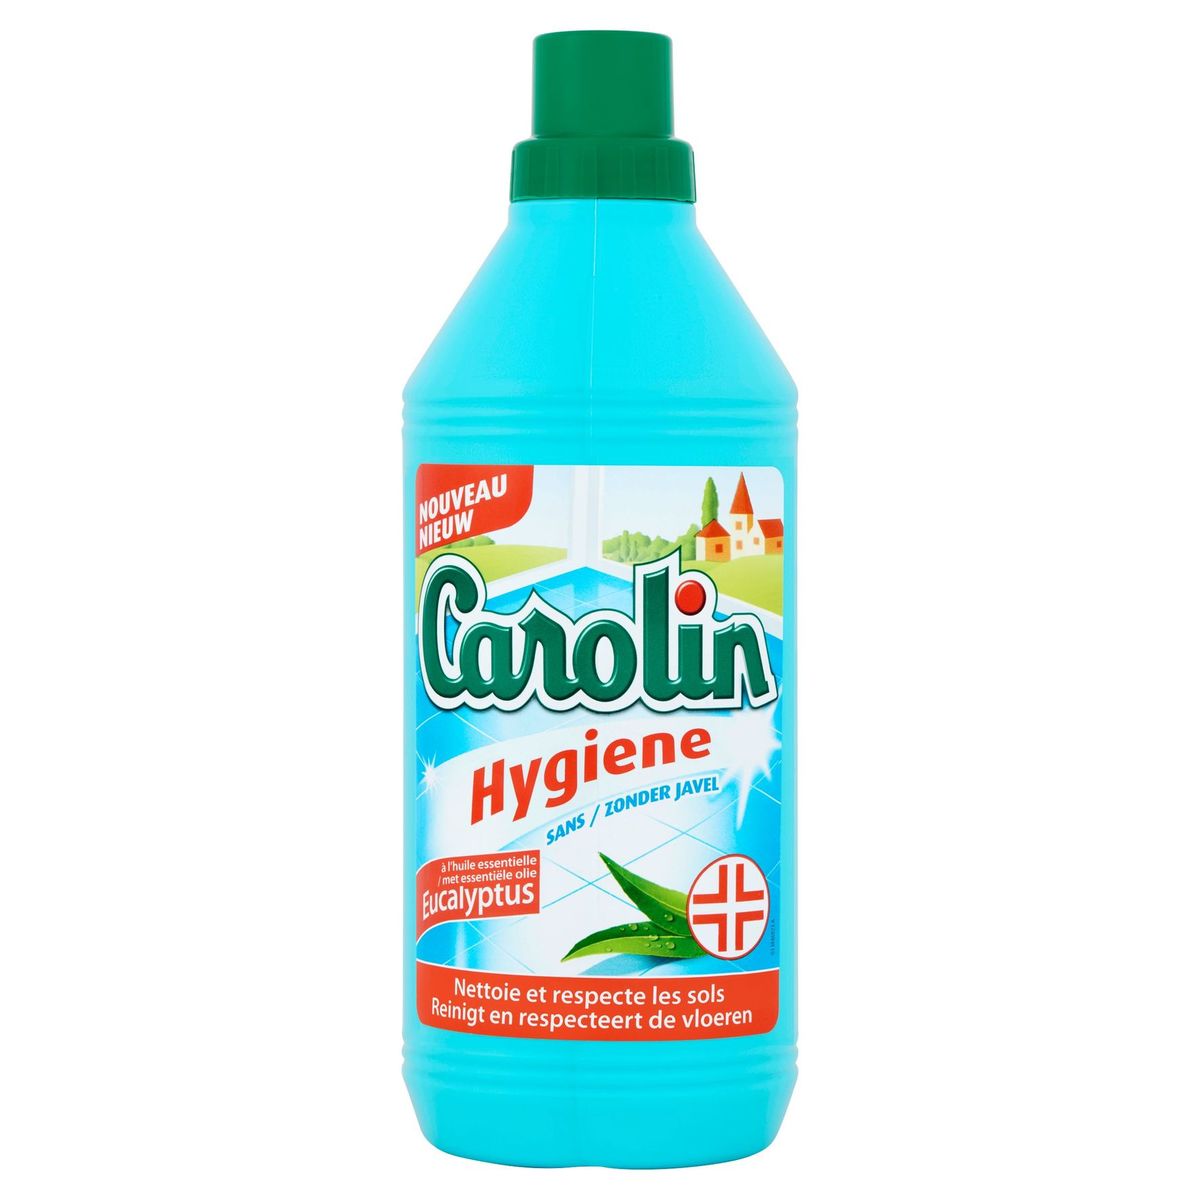 Carolin Hygiene met Essentiële Olie Eucalyptus 1 L